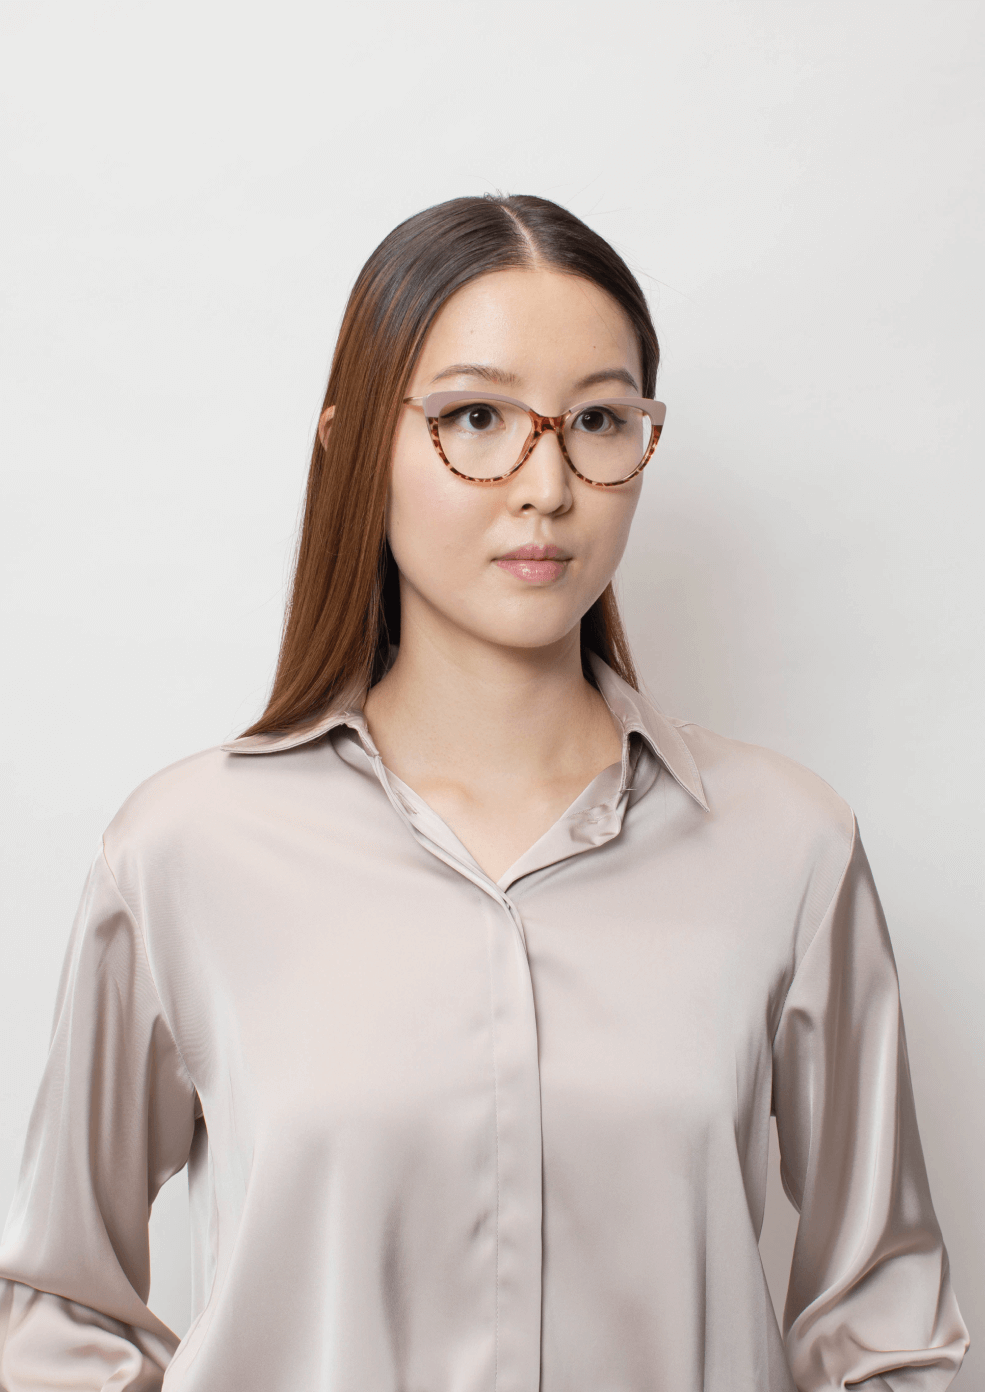 Women wearing cateye frames.